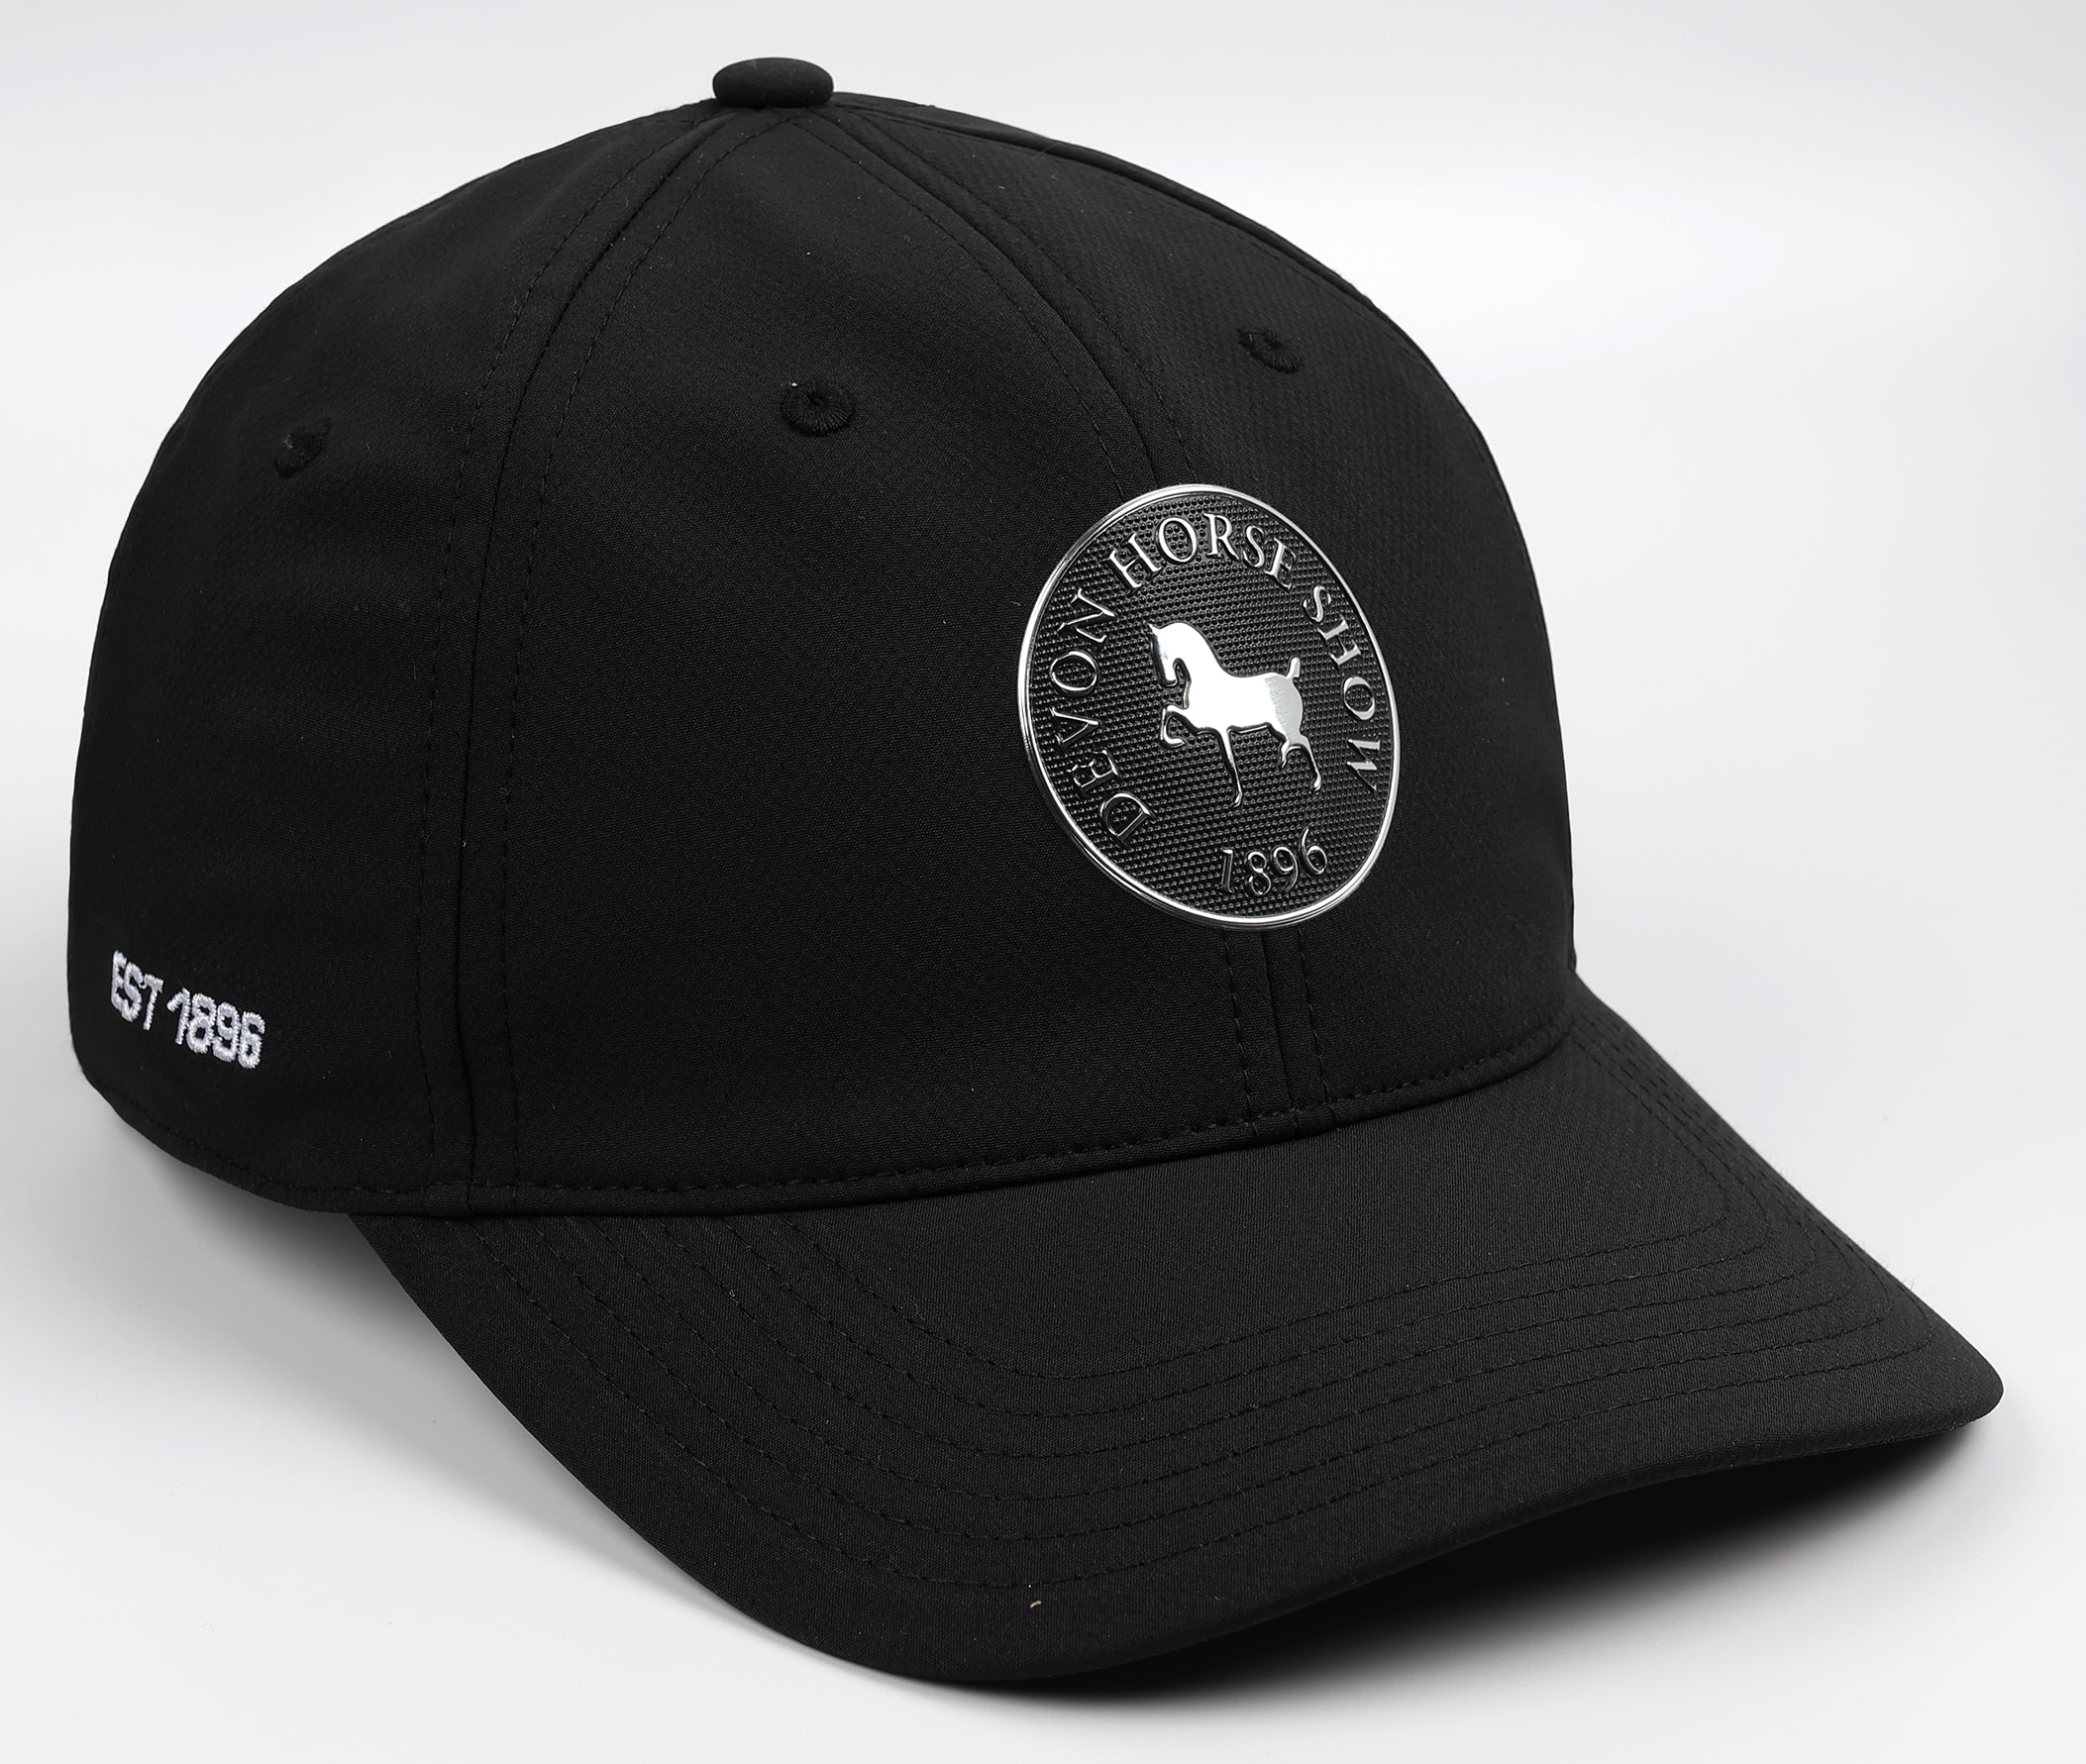 Devon Metallic Logo Tech Hat by Ahead